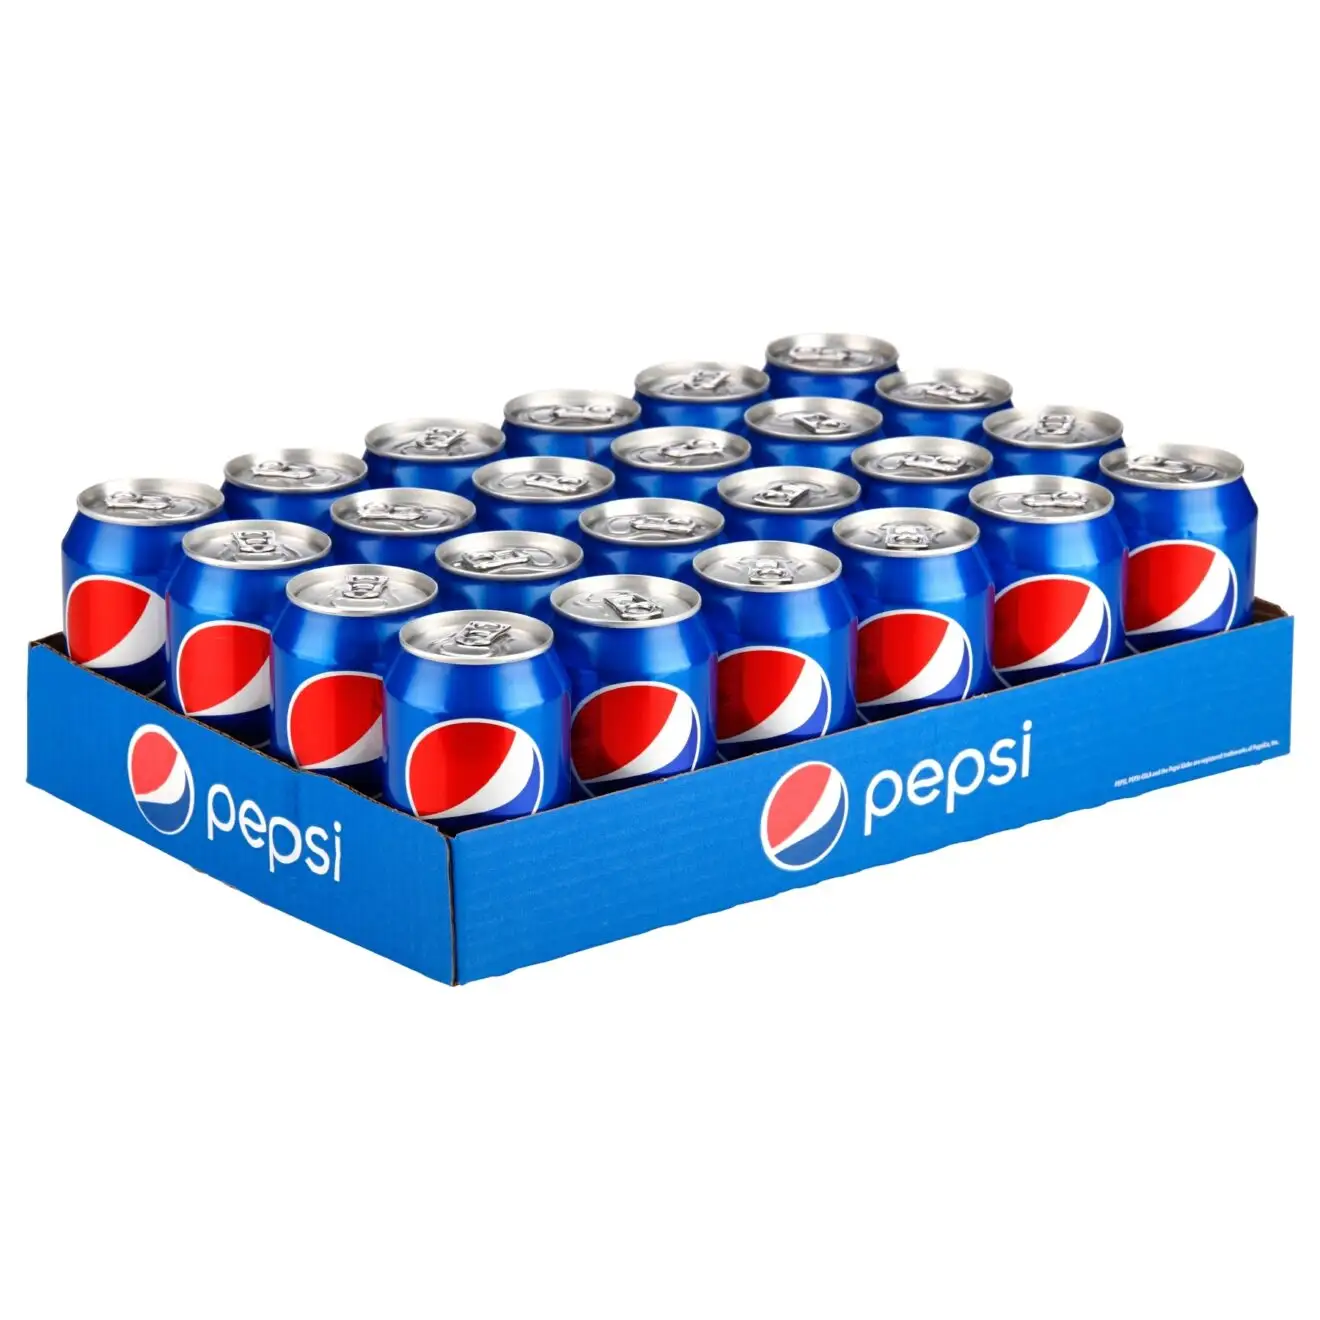 Pepsi Soft Drink Pepsi asli 330ml * 24 kaleng/Pepsi Cola 0,33l Can